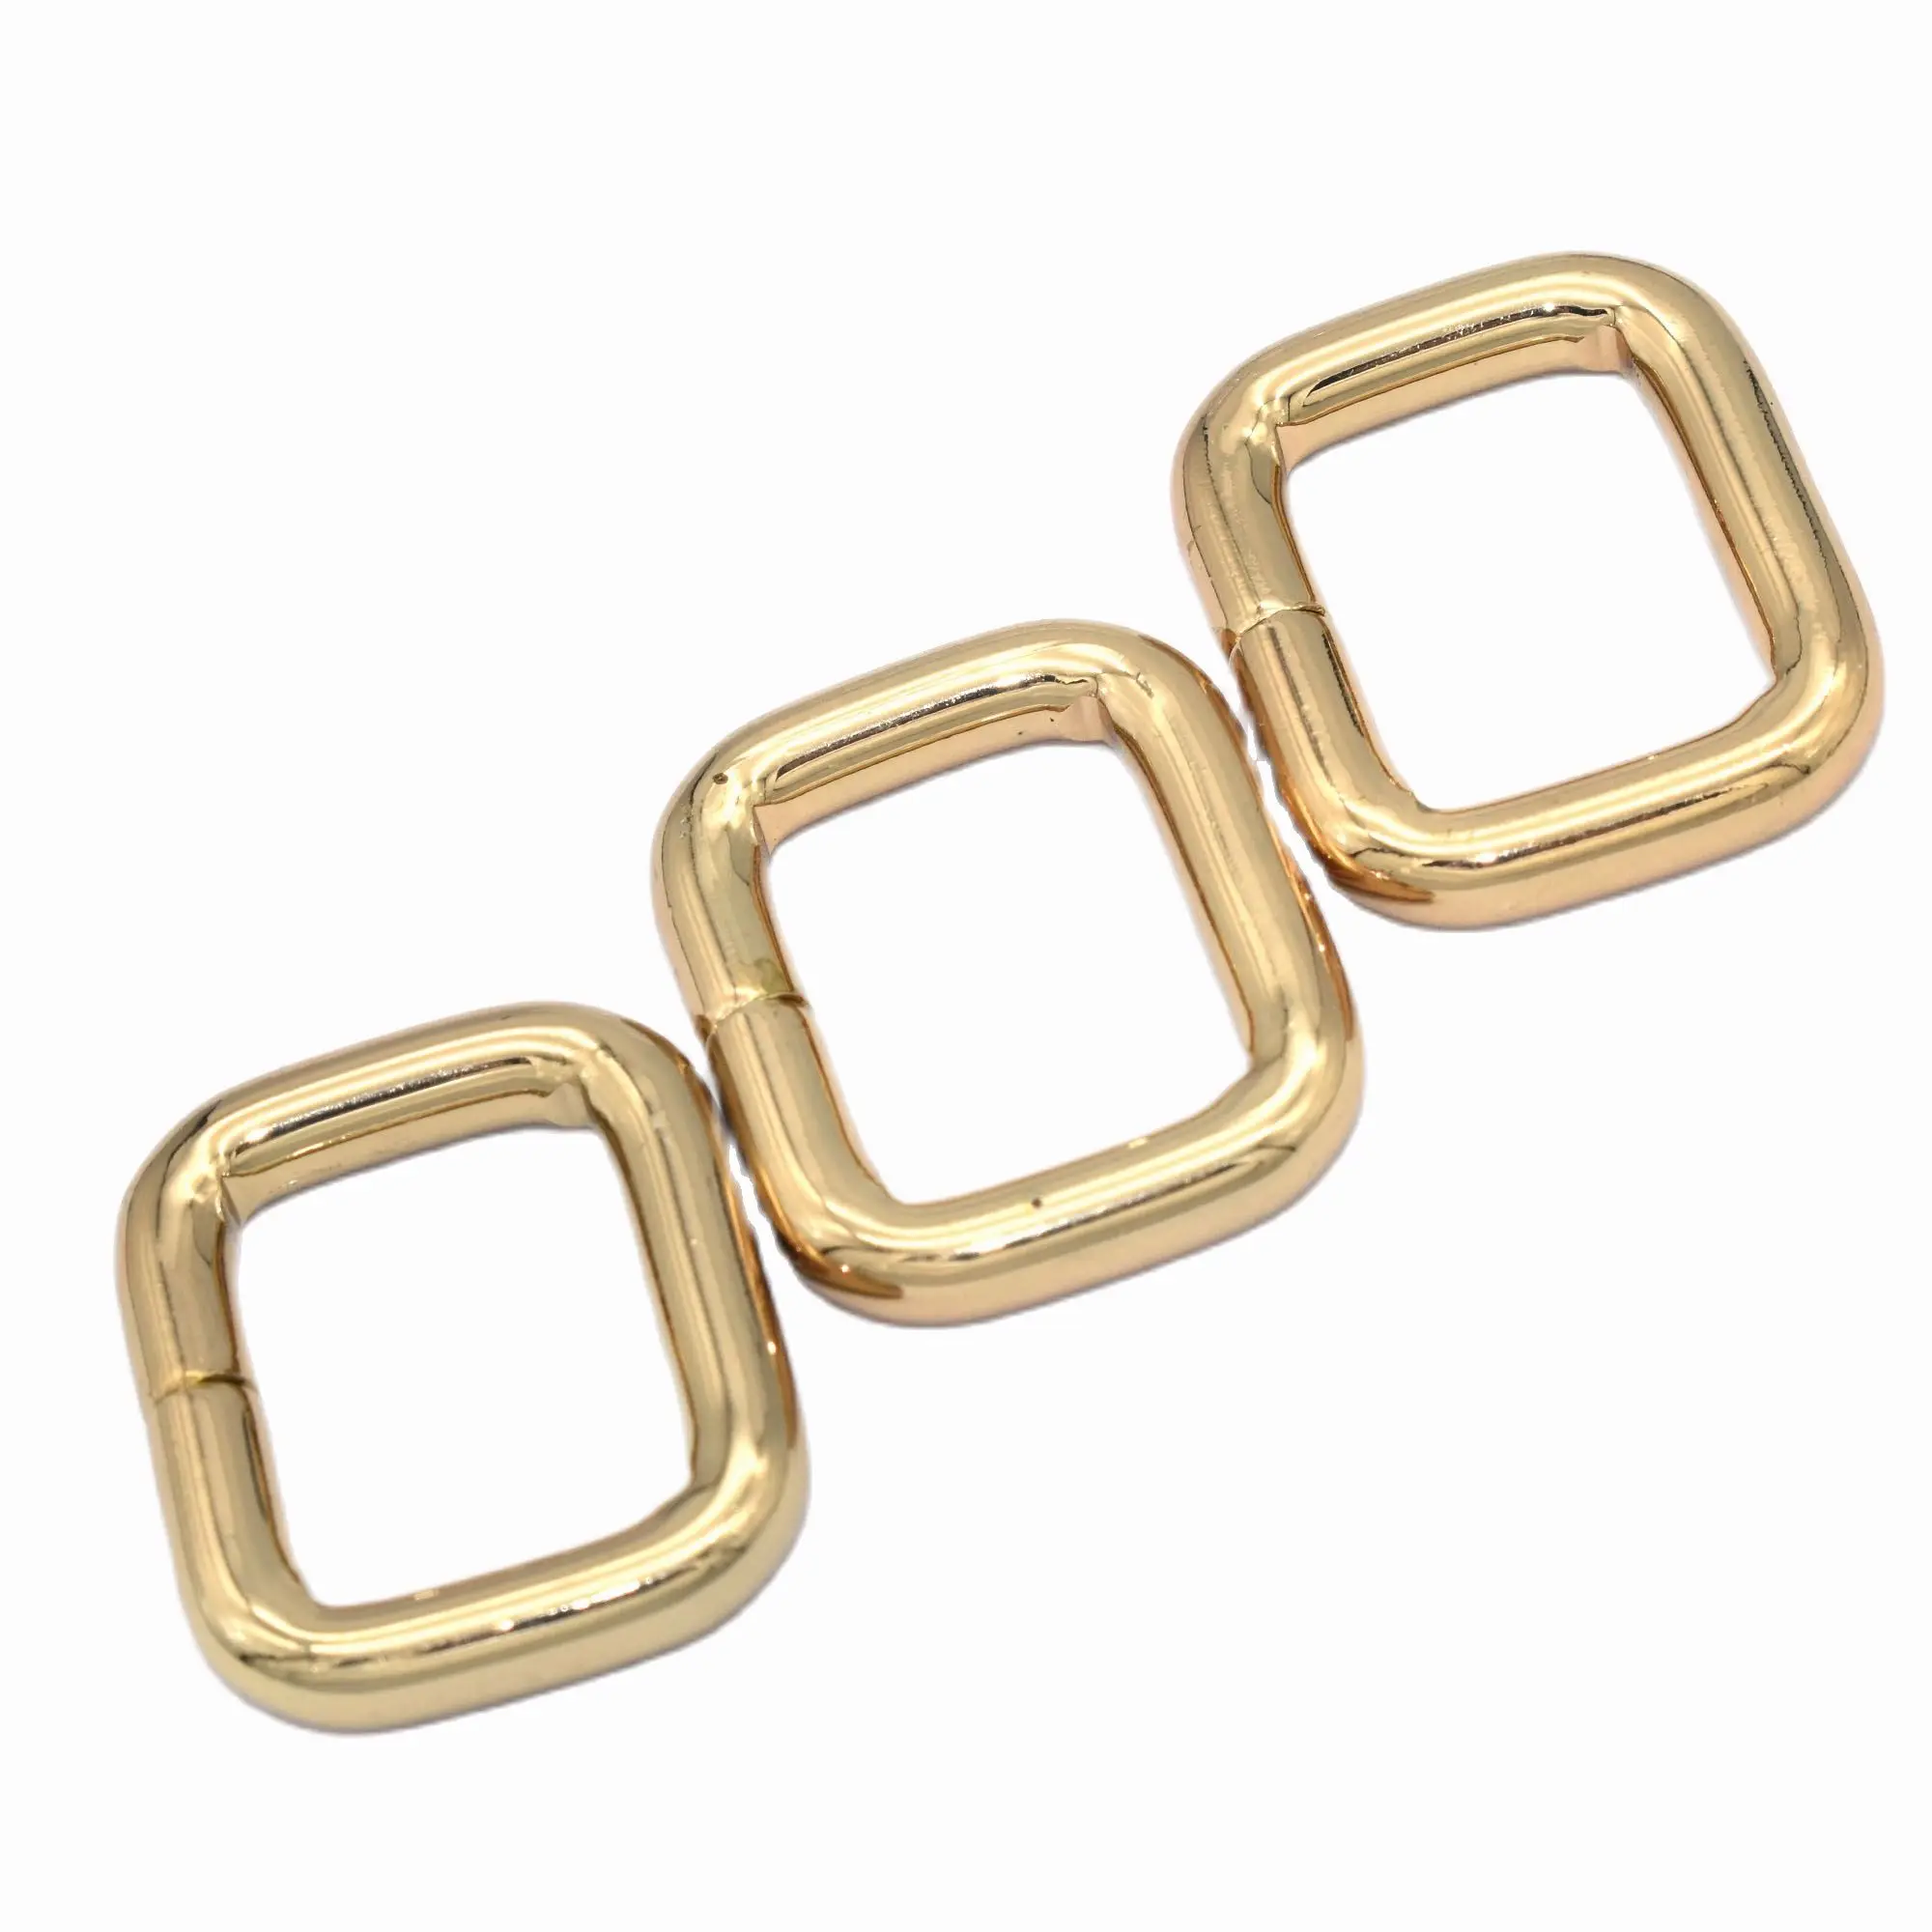 

Pale Gold Belt Buckle Adjustable Strap Waistband Buckles Slide Bag Clasps Fastener Rings Handbag Hardware Supplies 25 mm(1")